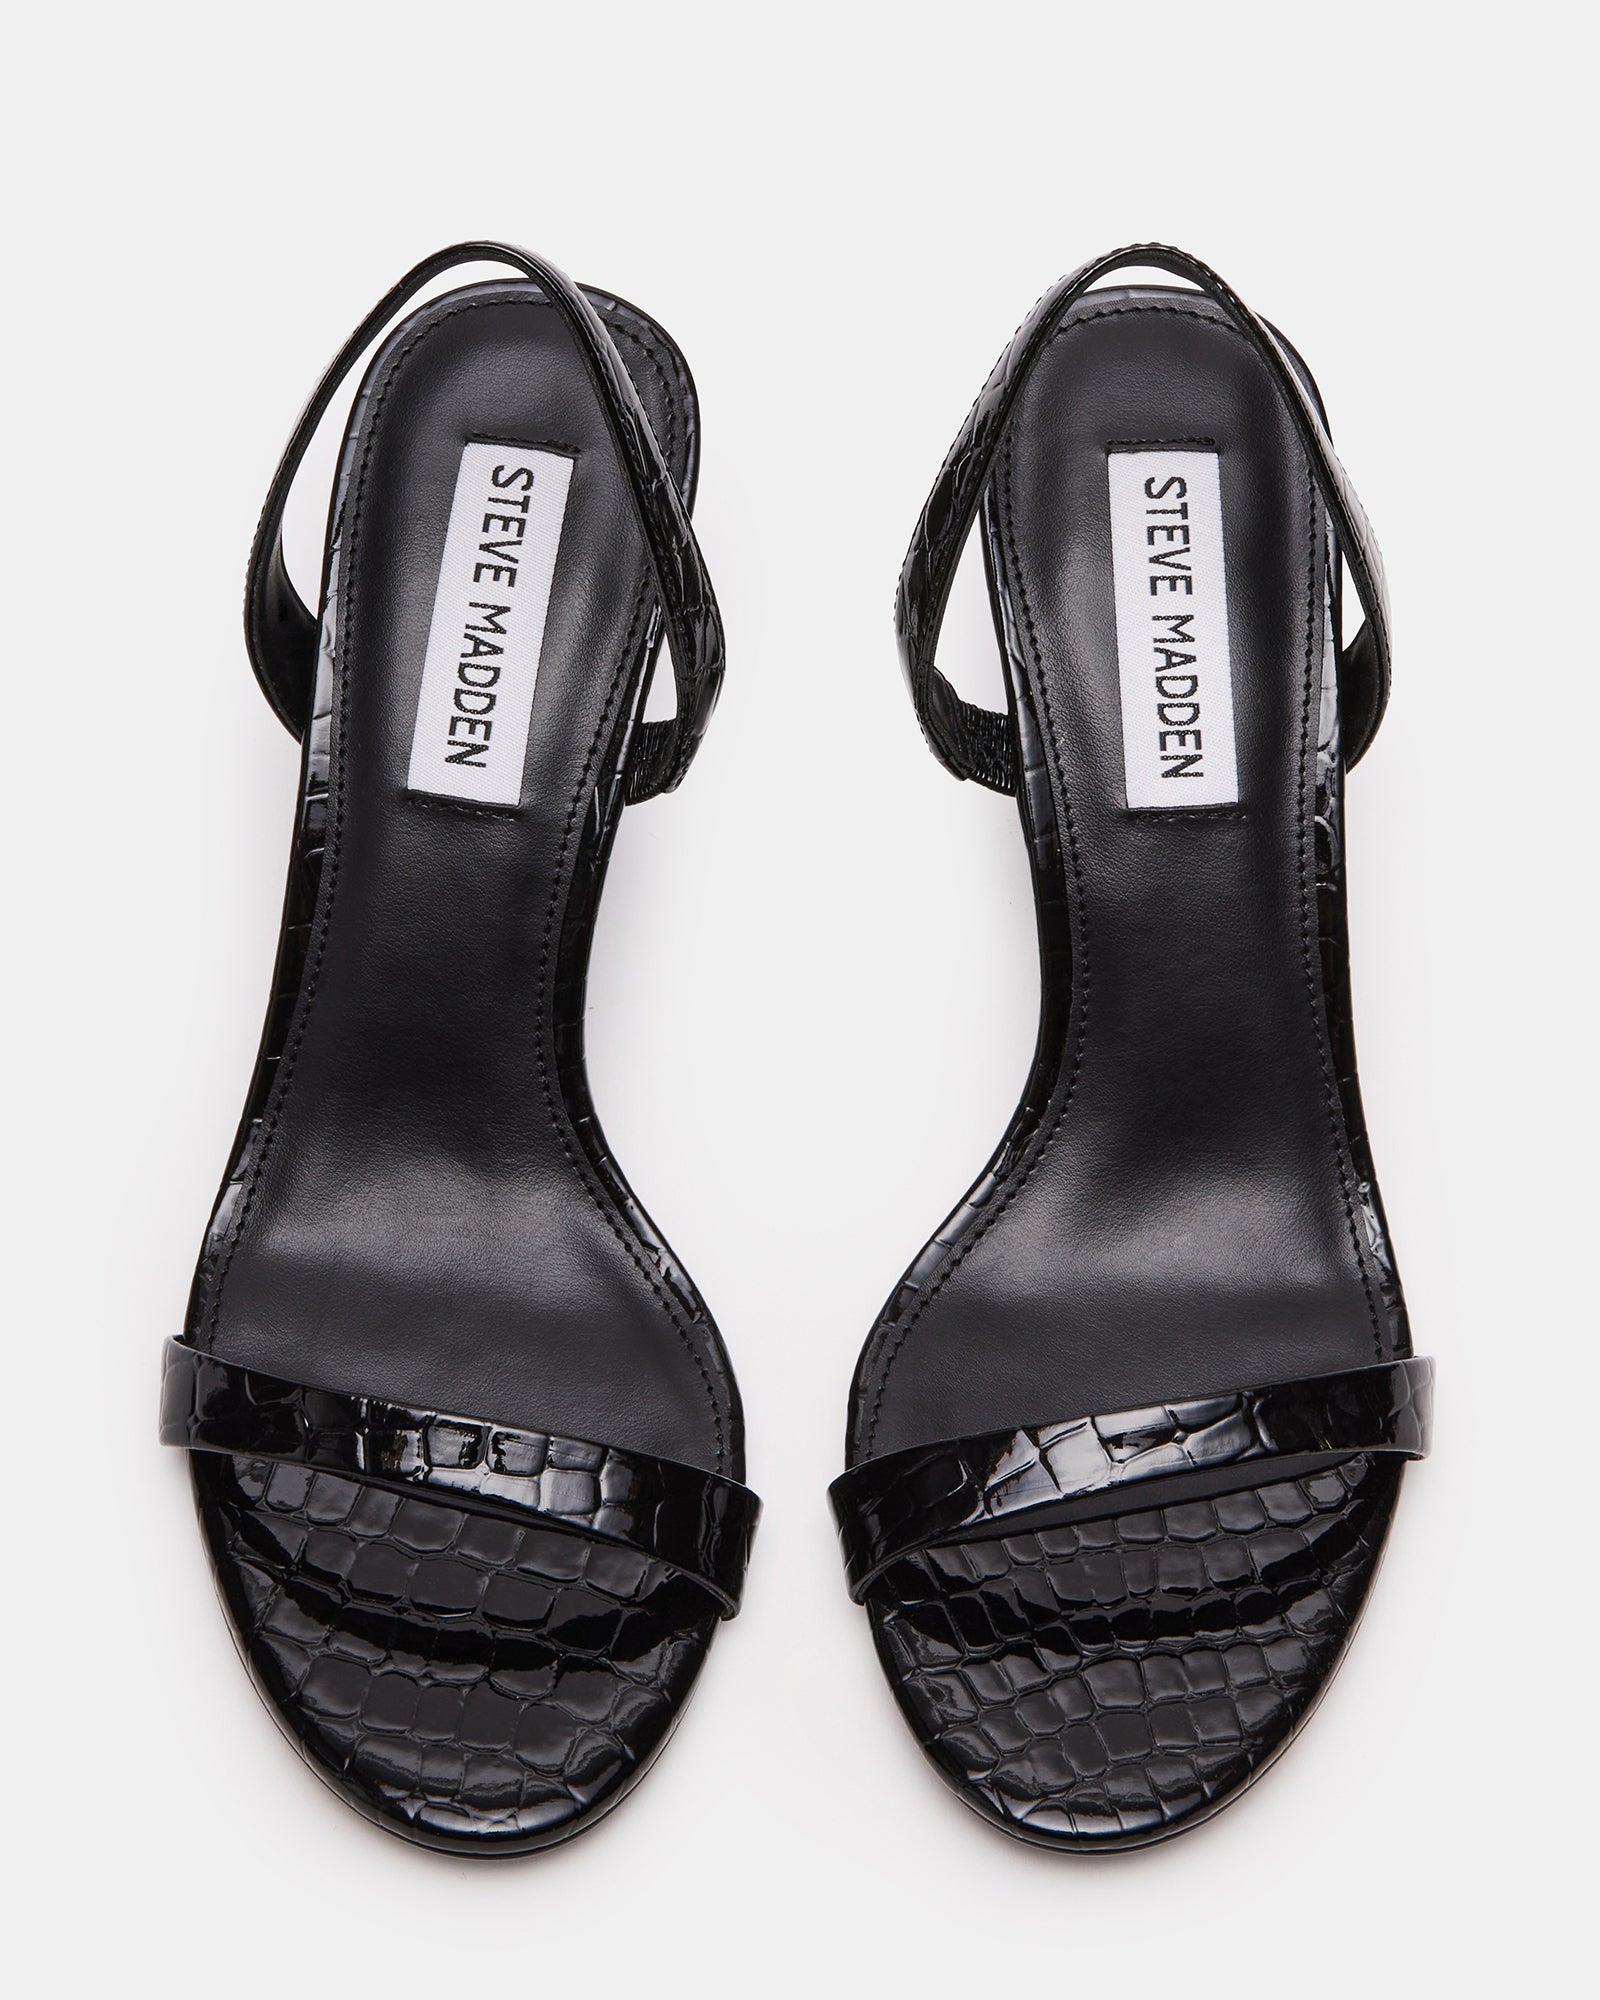 ELMA Black Crocodile Slingback Strappy Heel | Women's Heels – Steve Madden